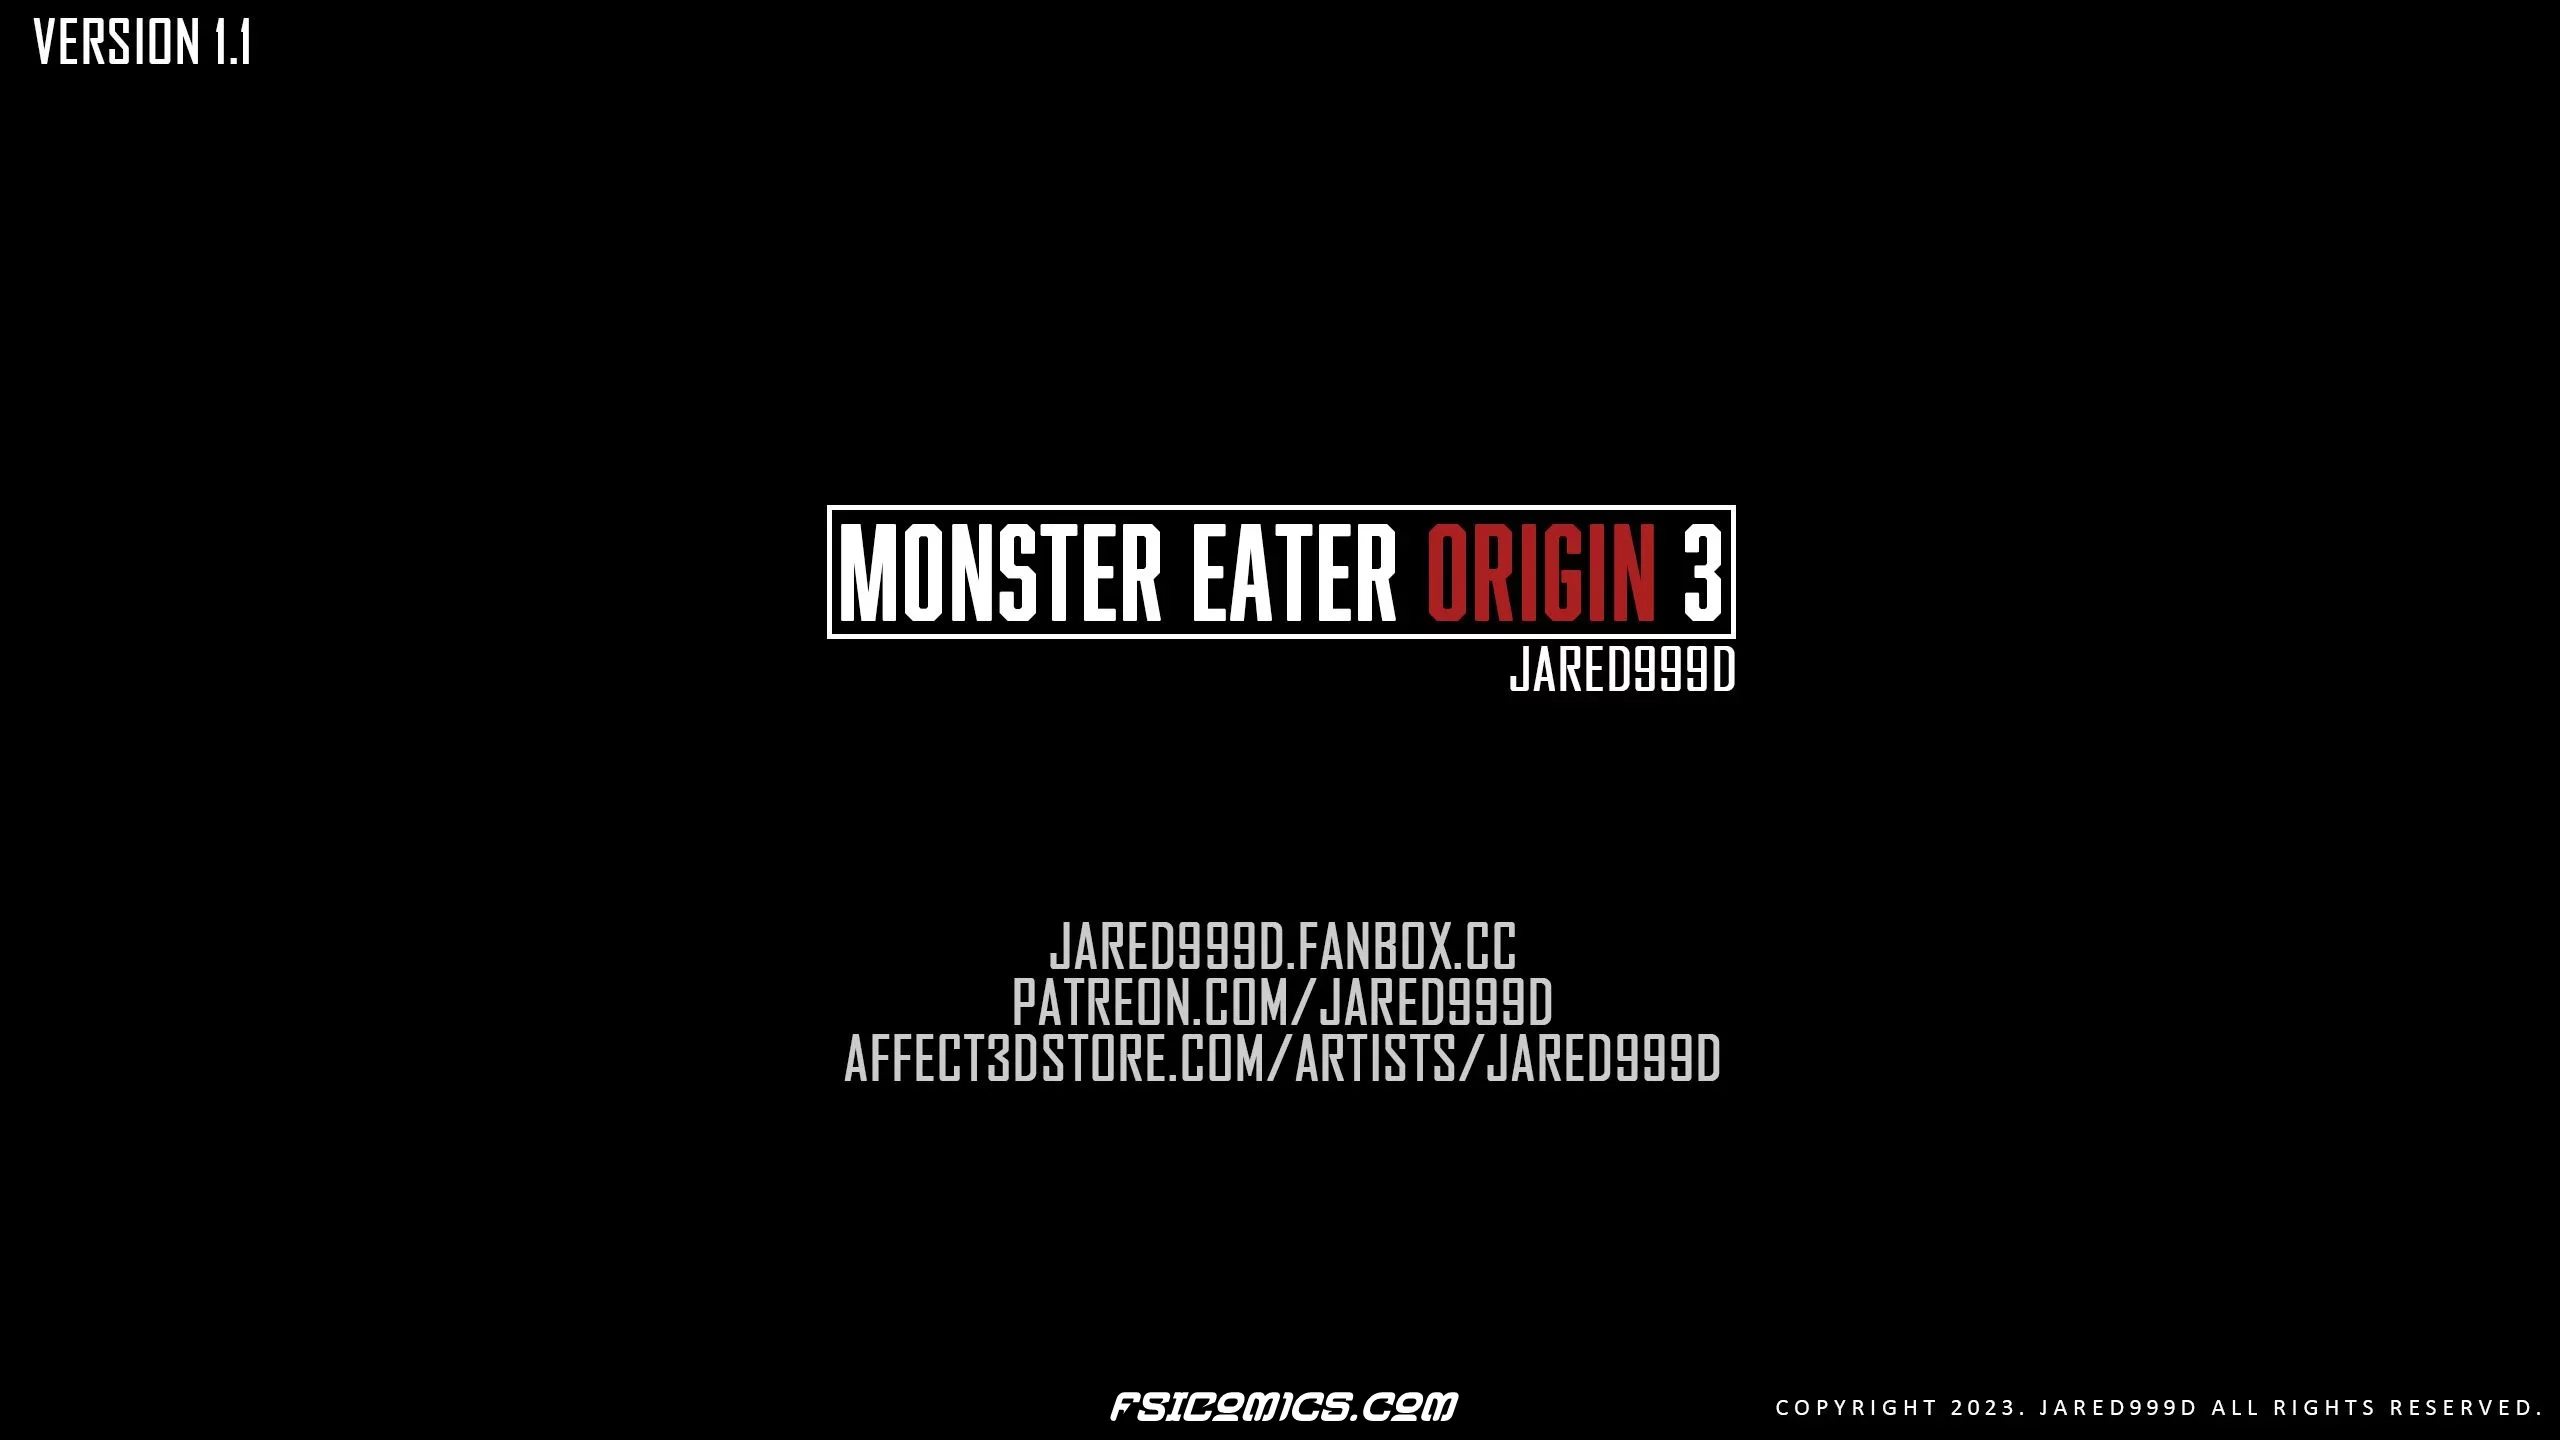 Monster Eater Origins Chapter 3 - Jared999D - 43 - FSIComics